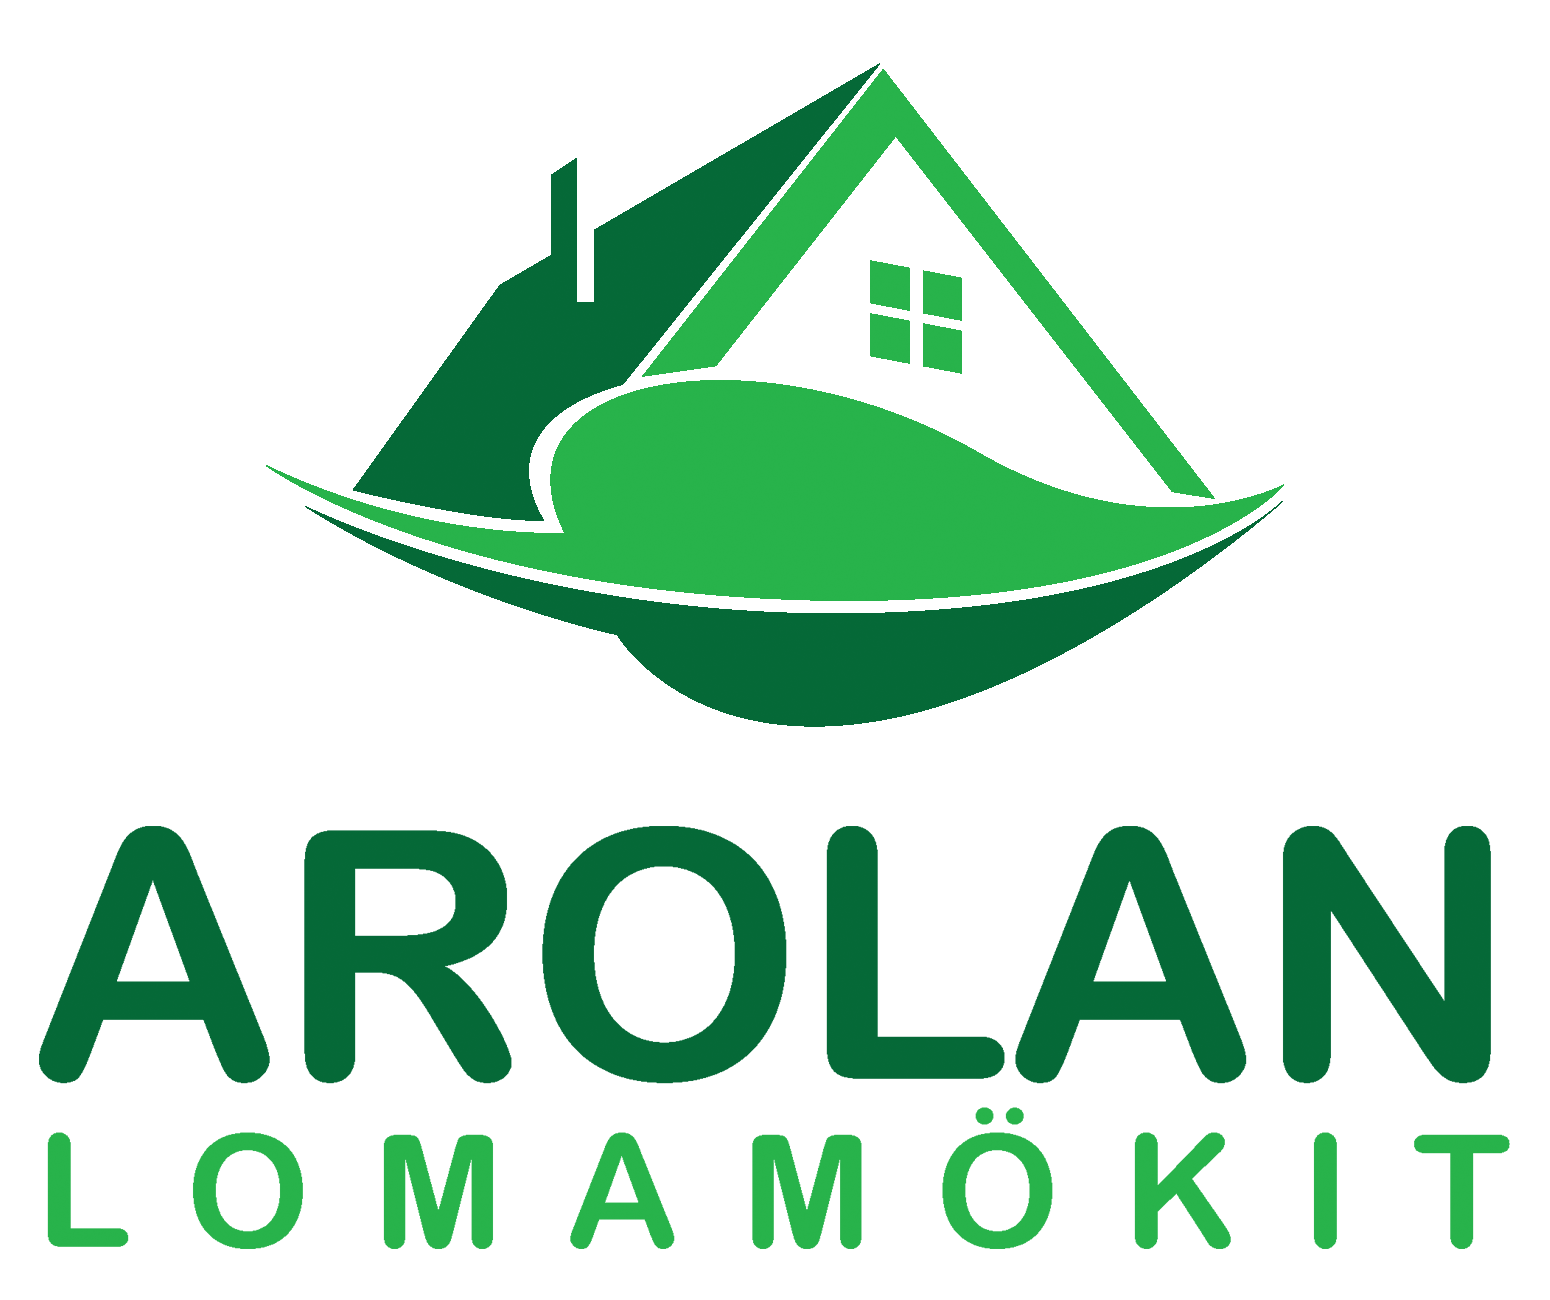 Arolan Lomamäkit -yrityksen logo.